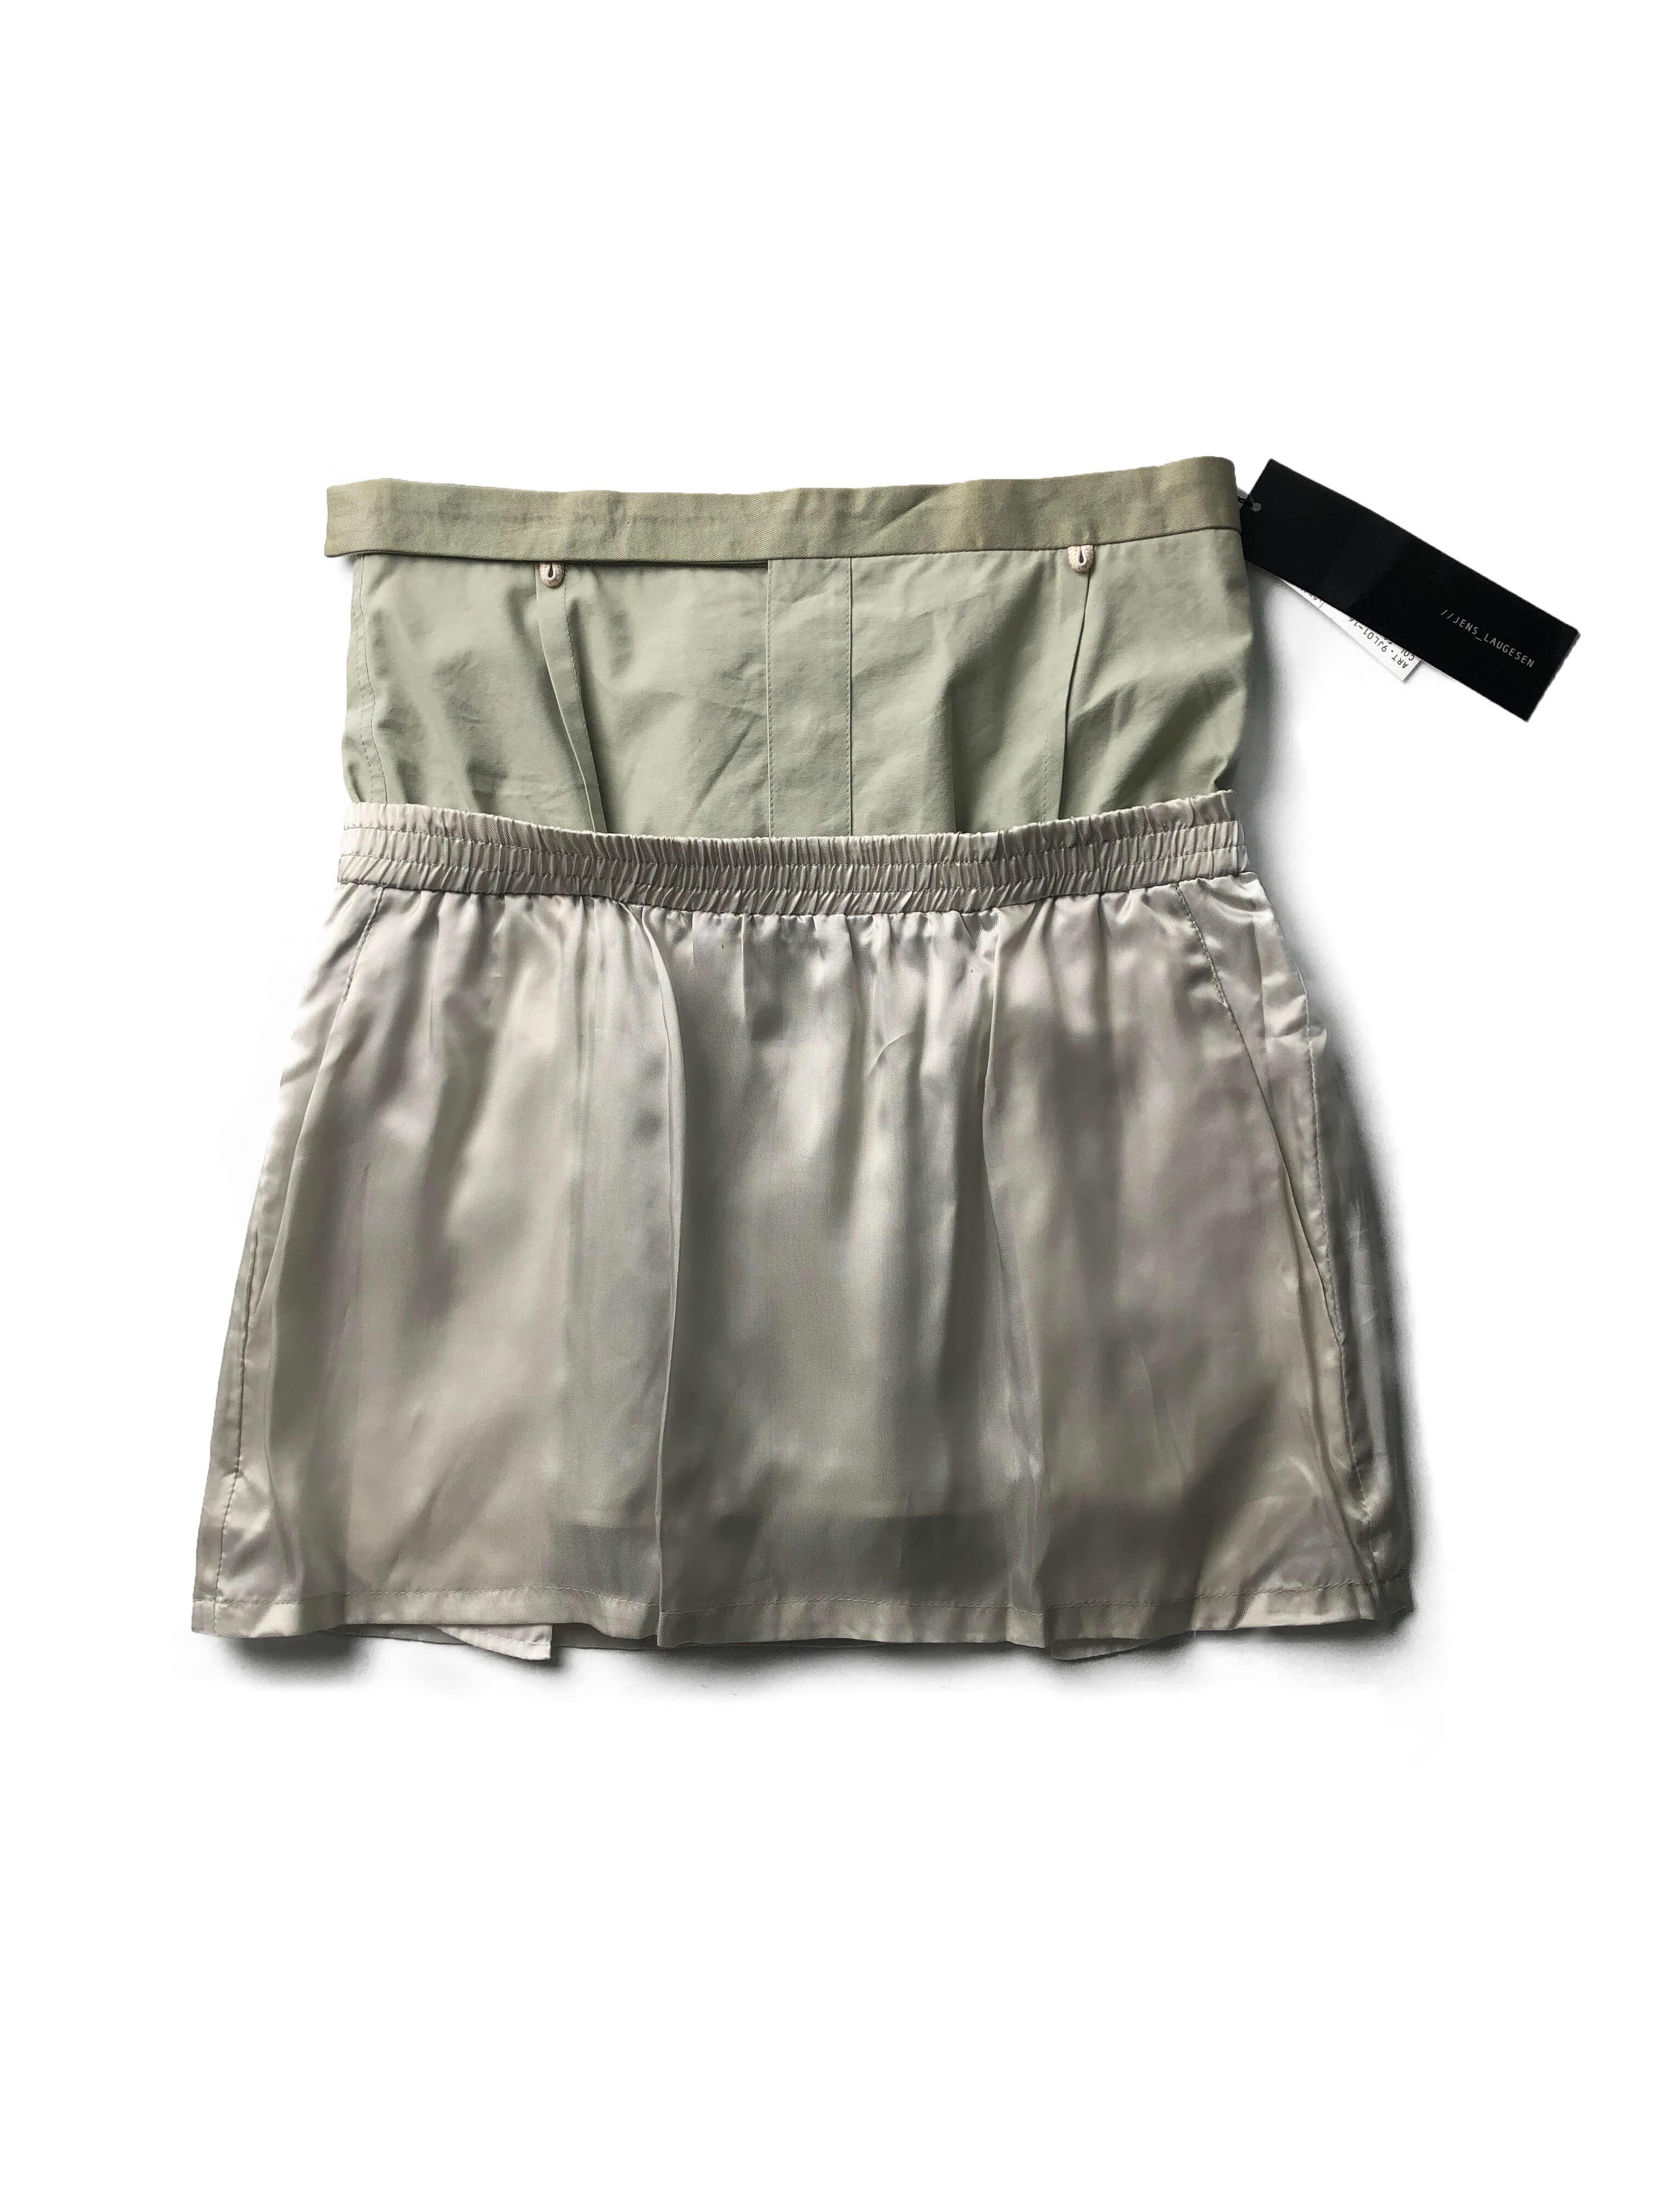 JENS LAUGESEN 2005ss layered skirt